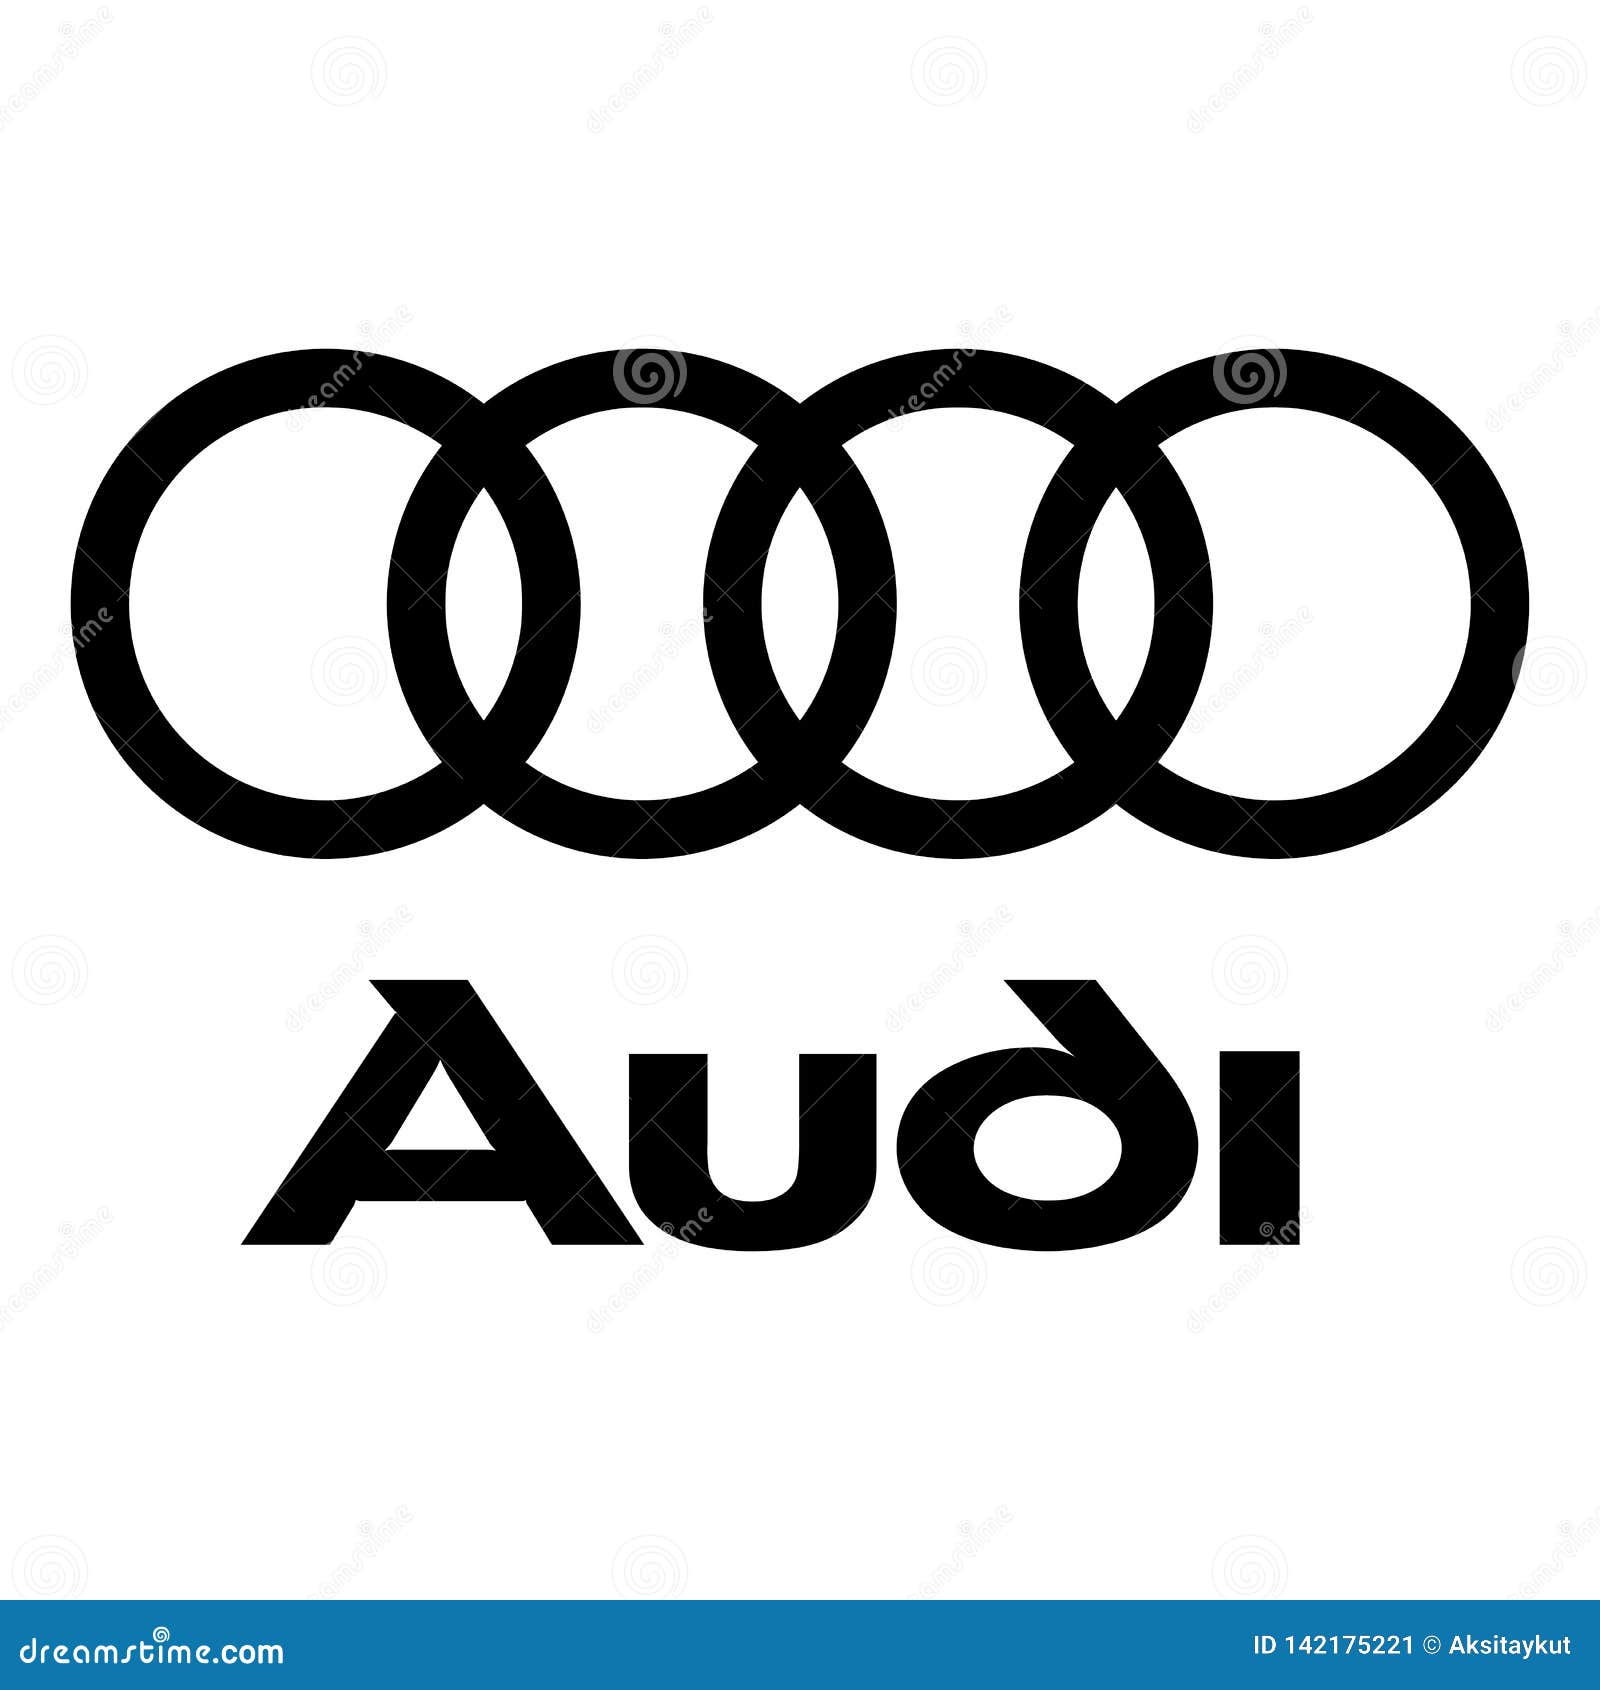 161 Audi Logo Stock Illustrations, Vectors & Clipart - Dreamstime